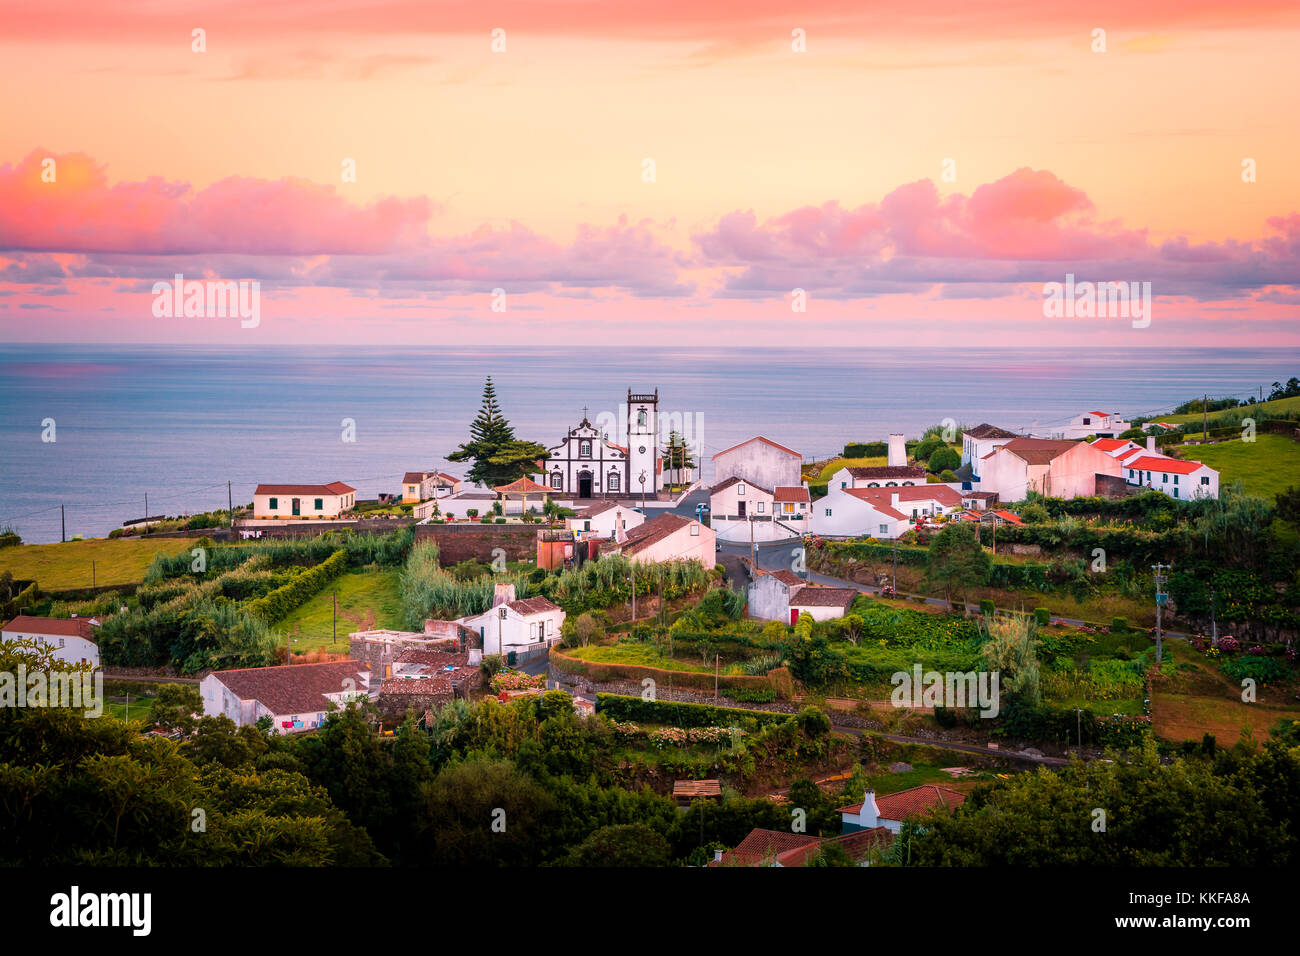 Di un bel colore rosa sunrise in un villaggio del Nordeste, isola Sao Miguel, Azzorre, Portogallo Foto Stock